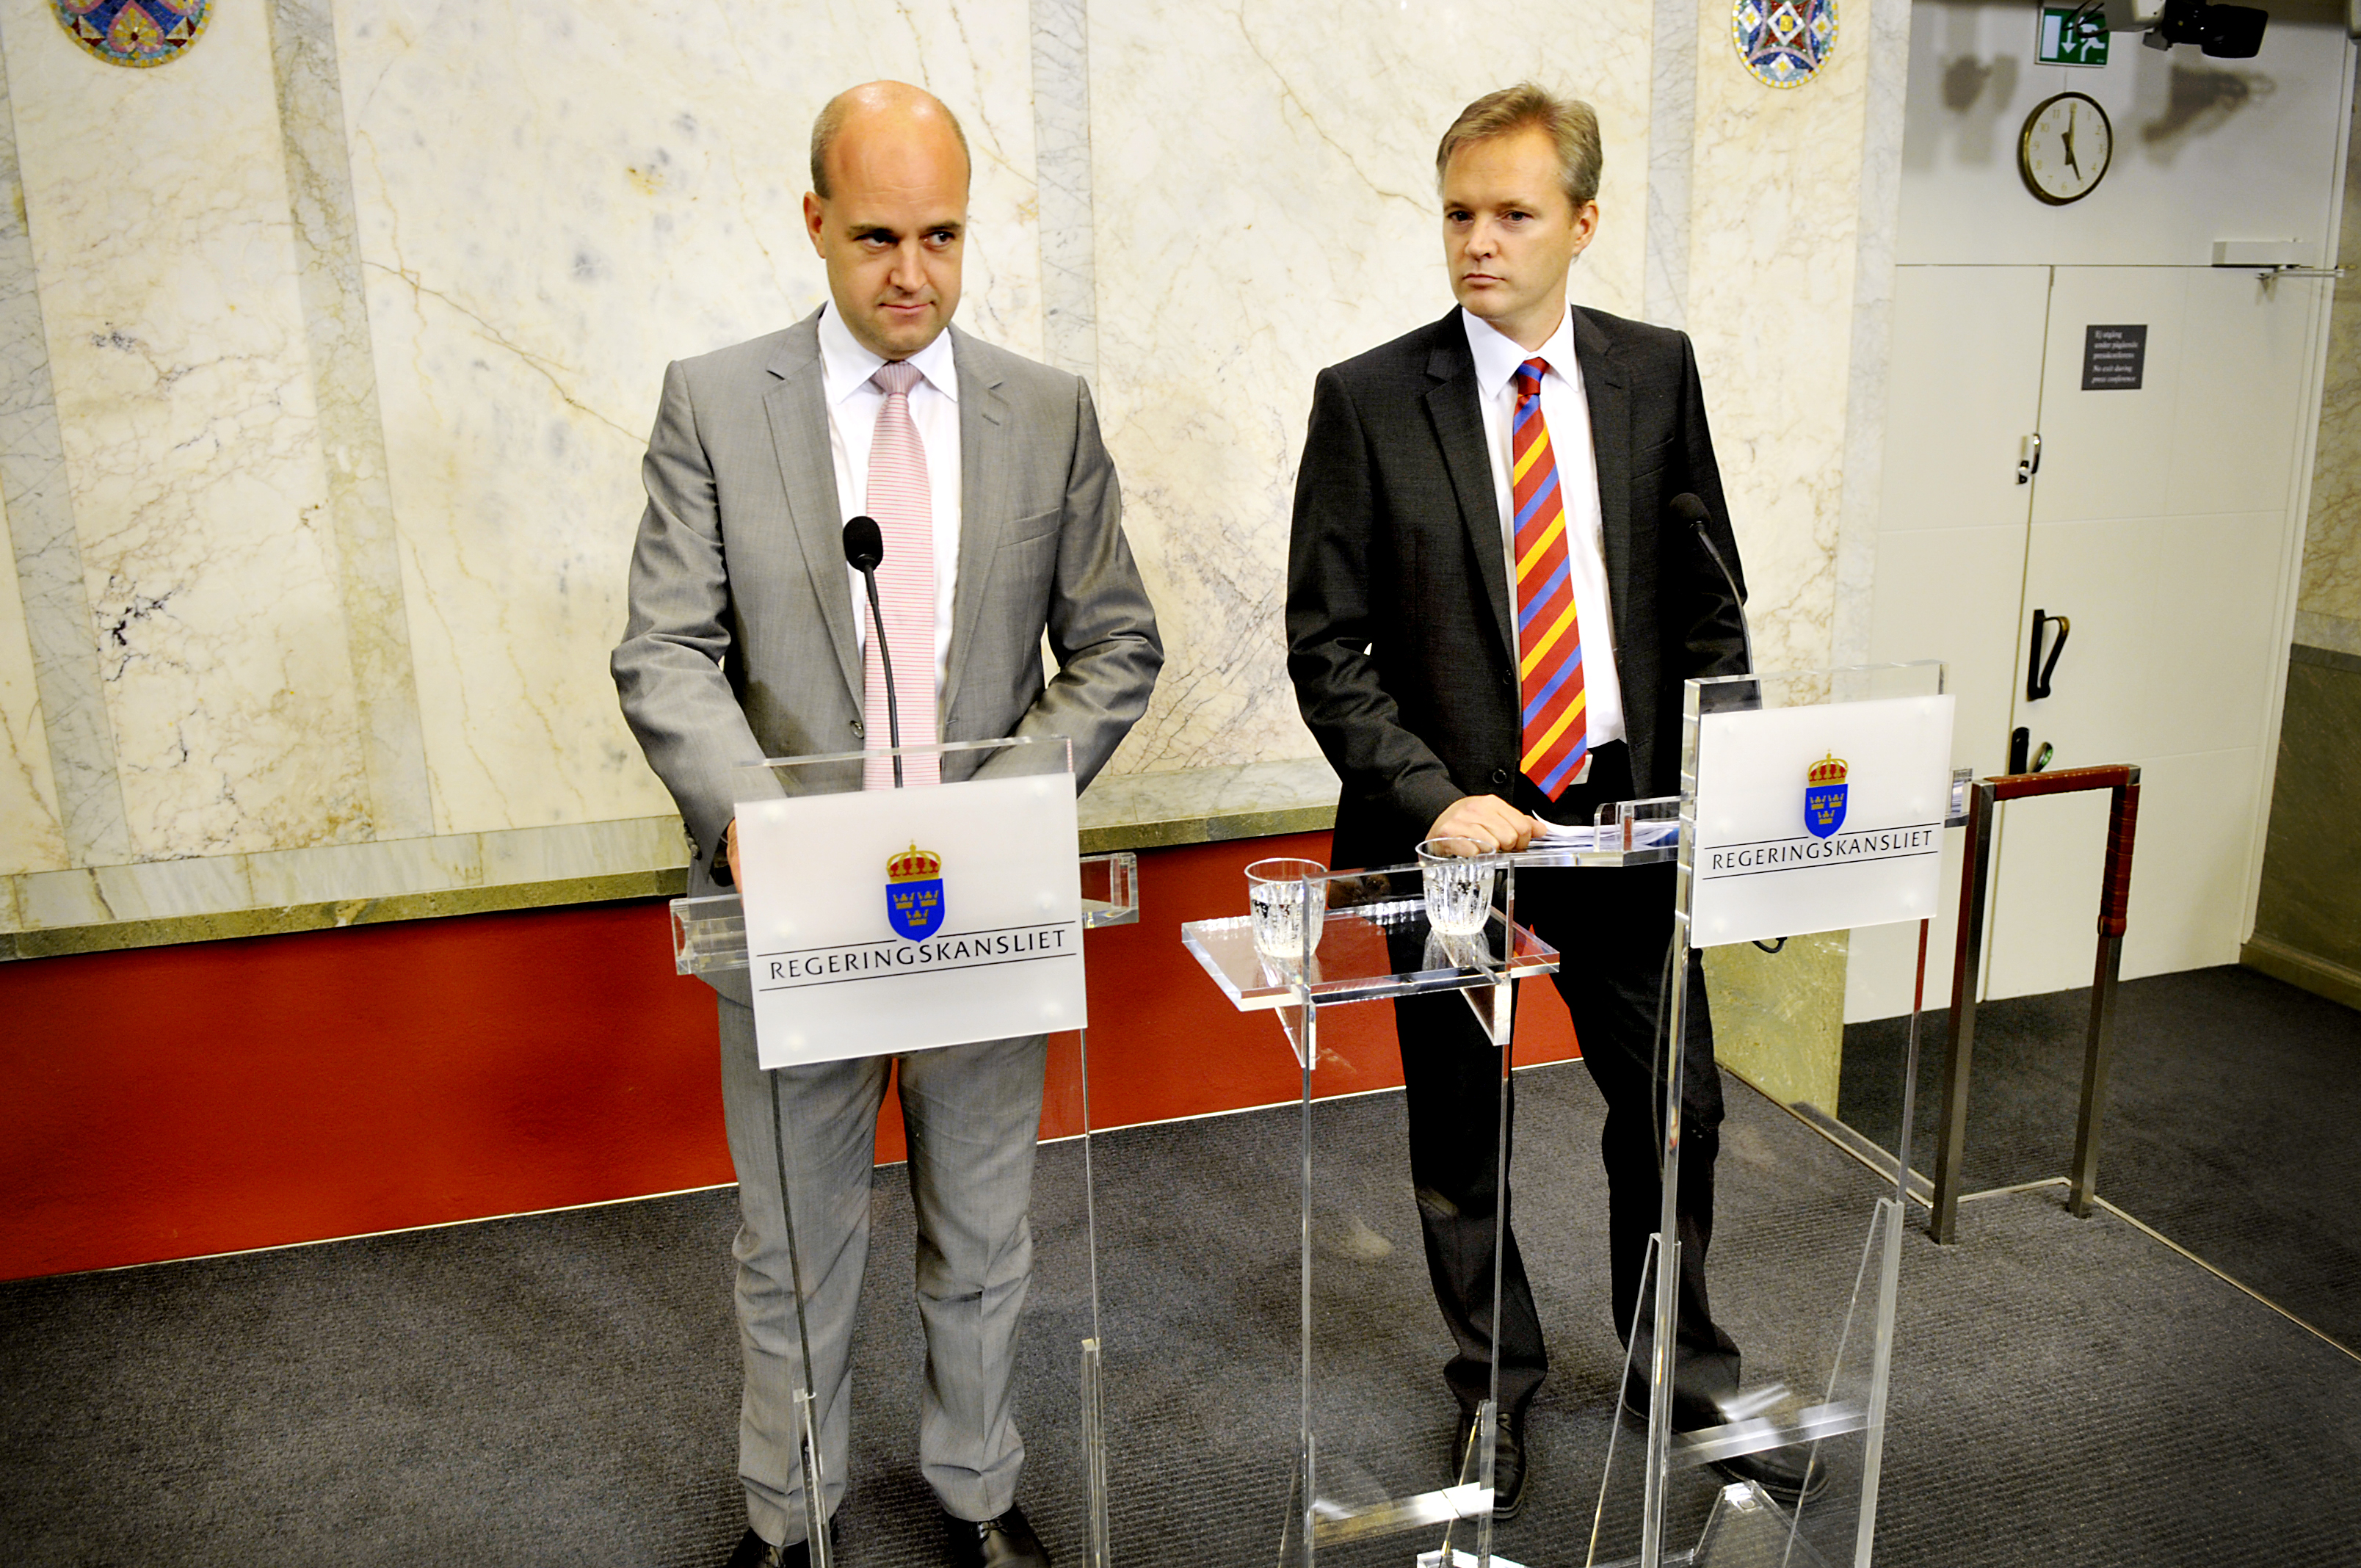 Sten Tolgfors, Fredrik Reinfeldt, Wikileaks, USA, Underrättelse